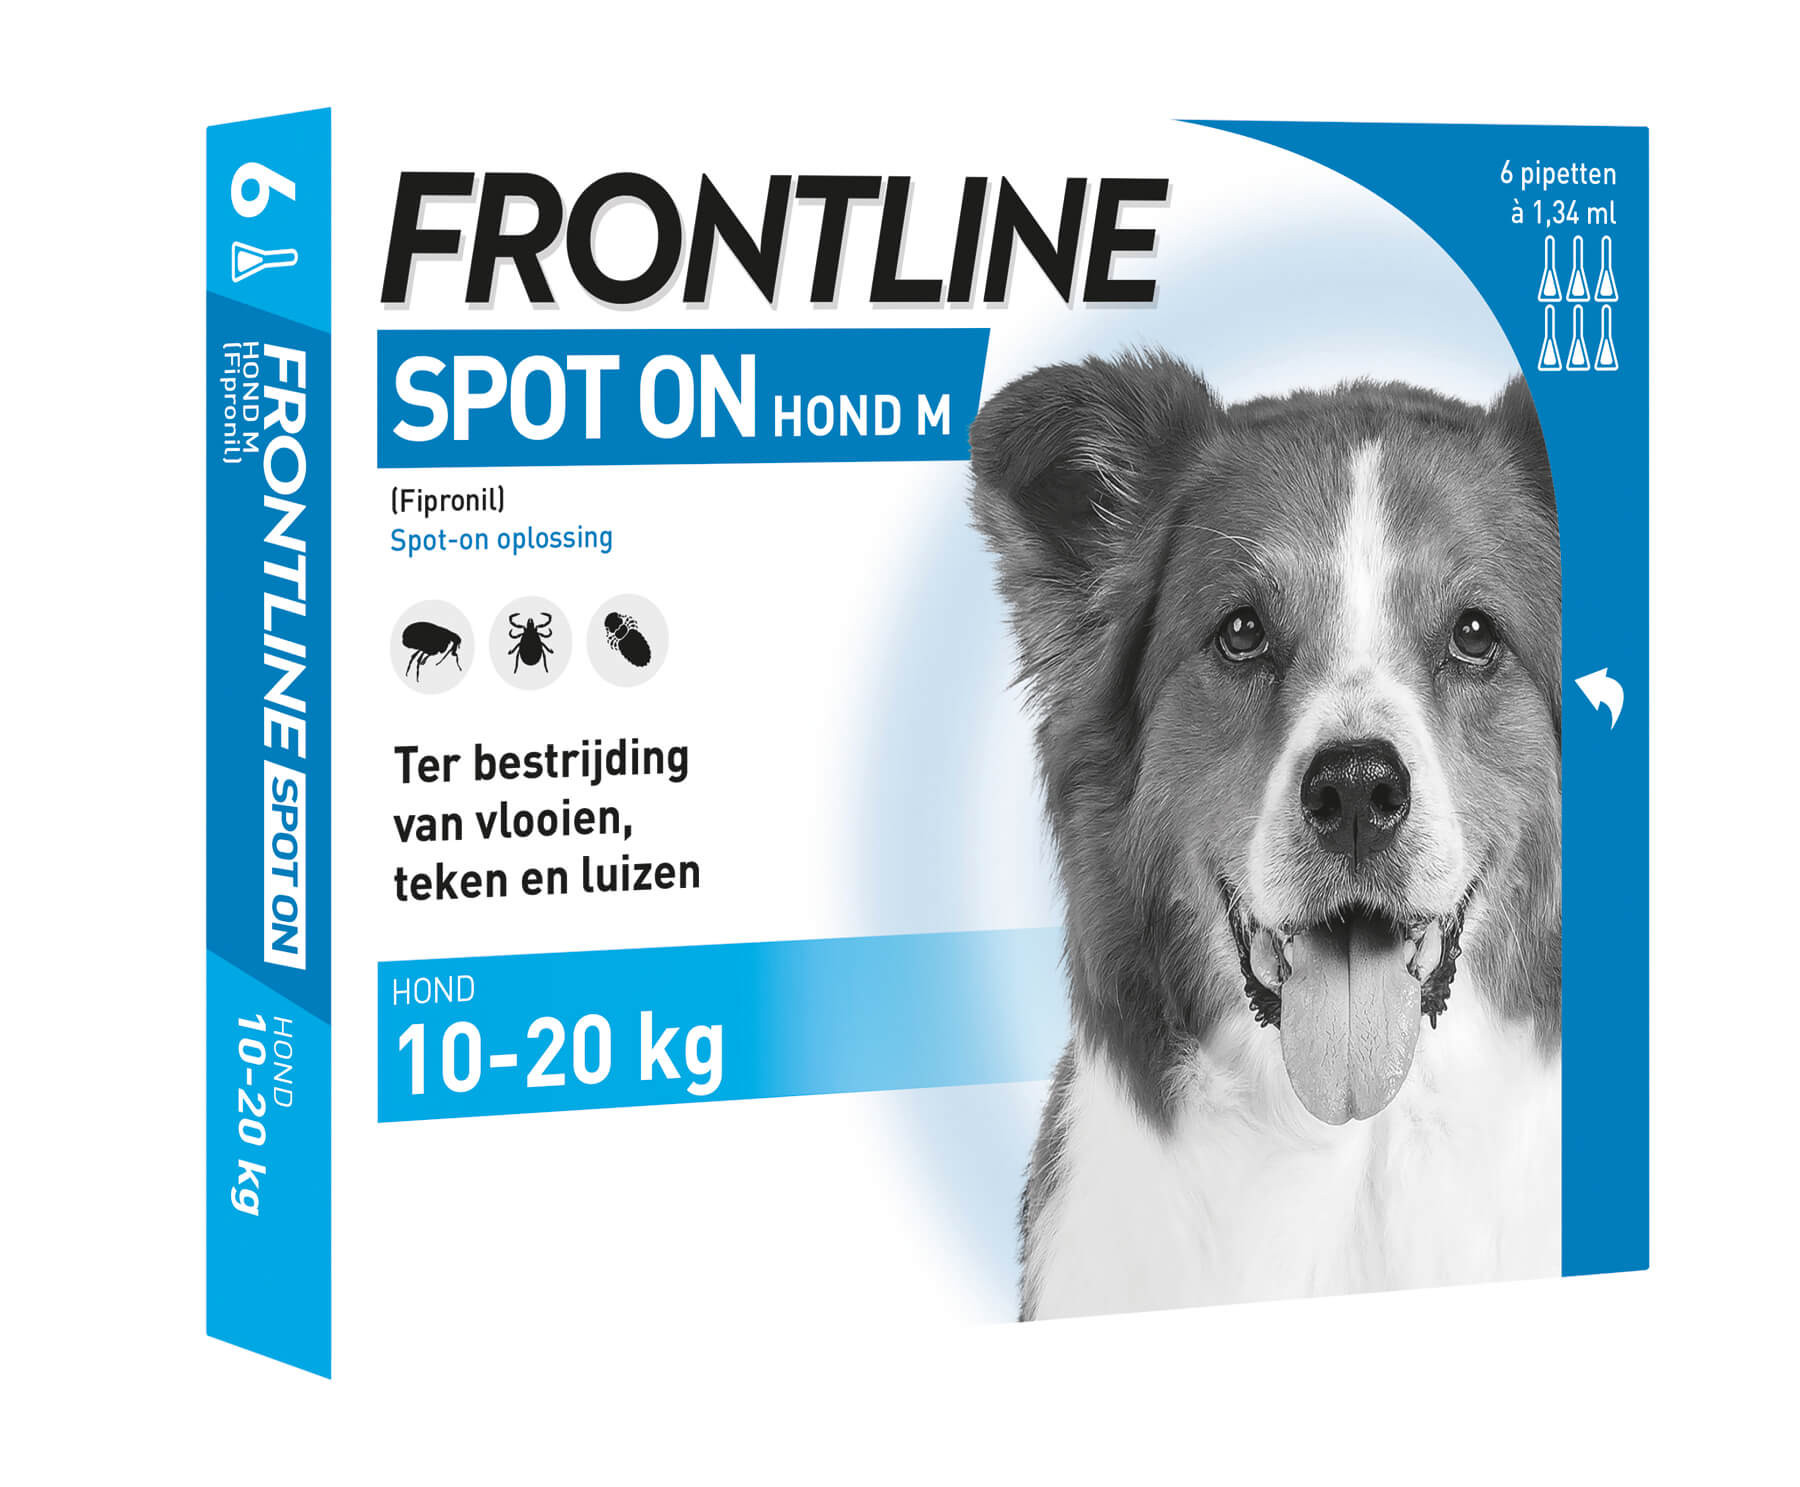 Afbeelding Frontline Spot on Hond M 4 pipetten door Brekz.nl